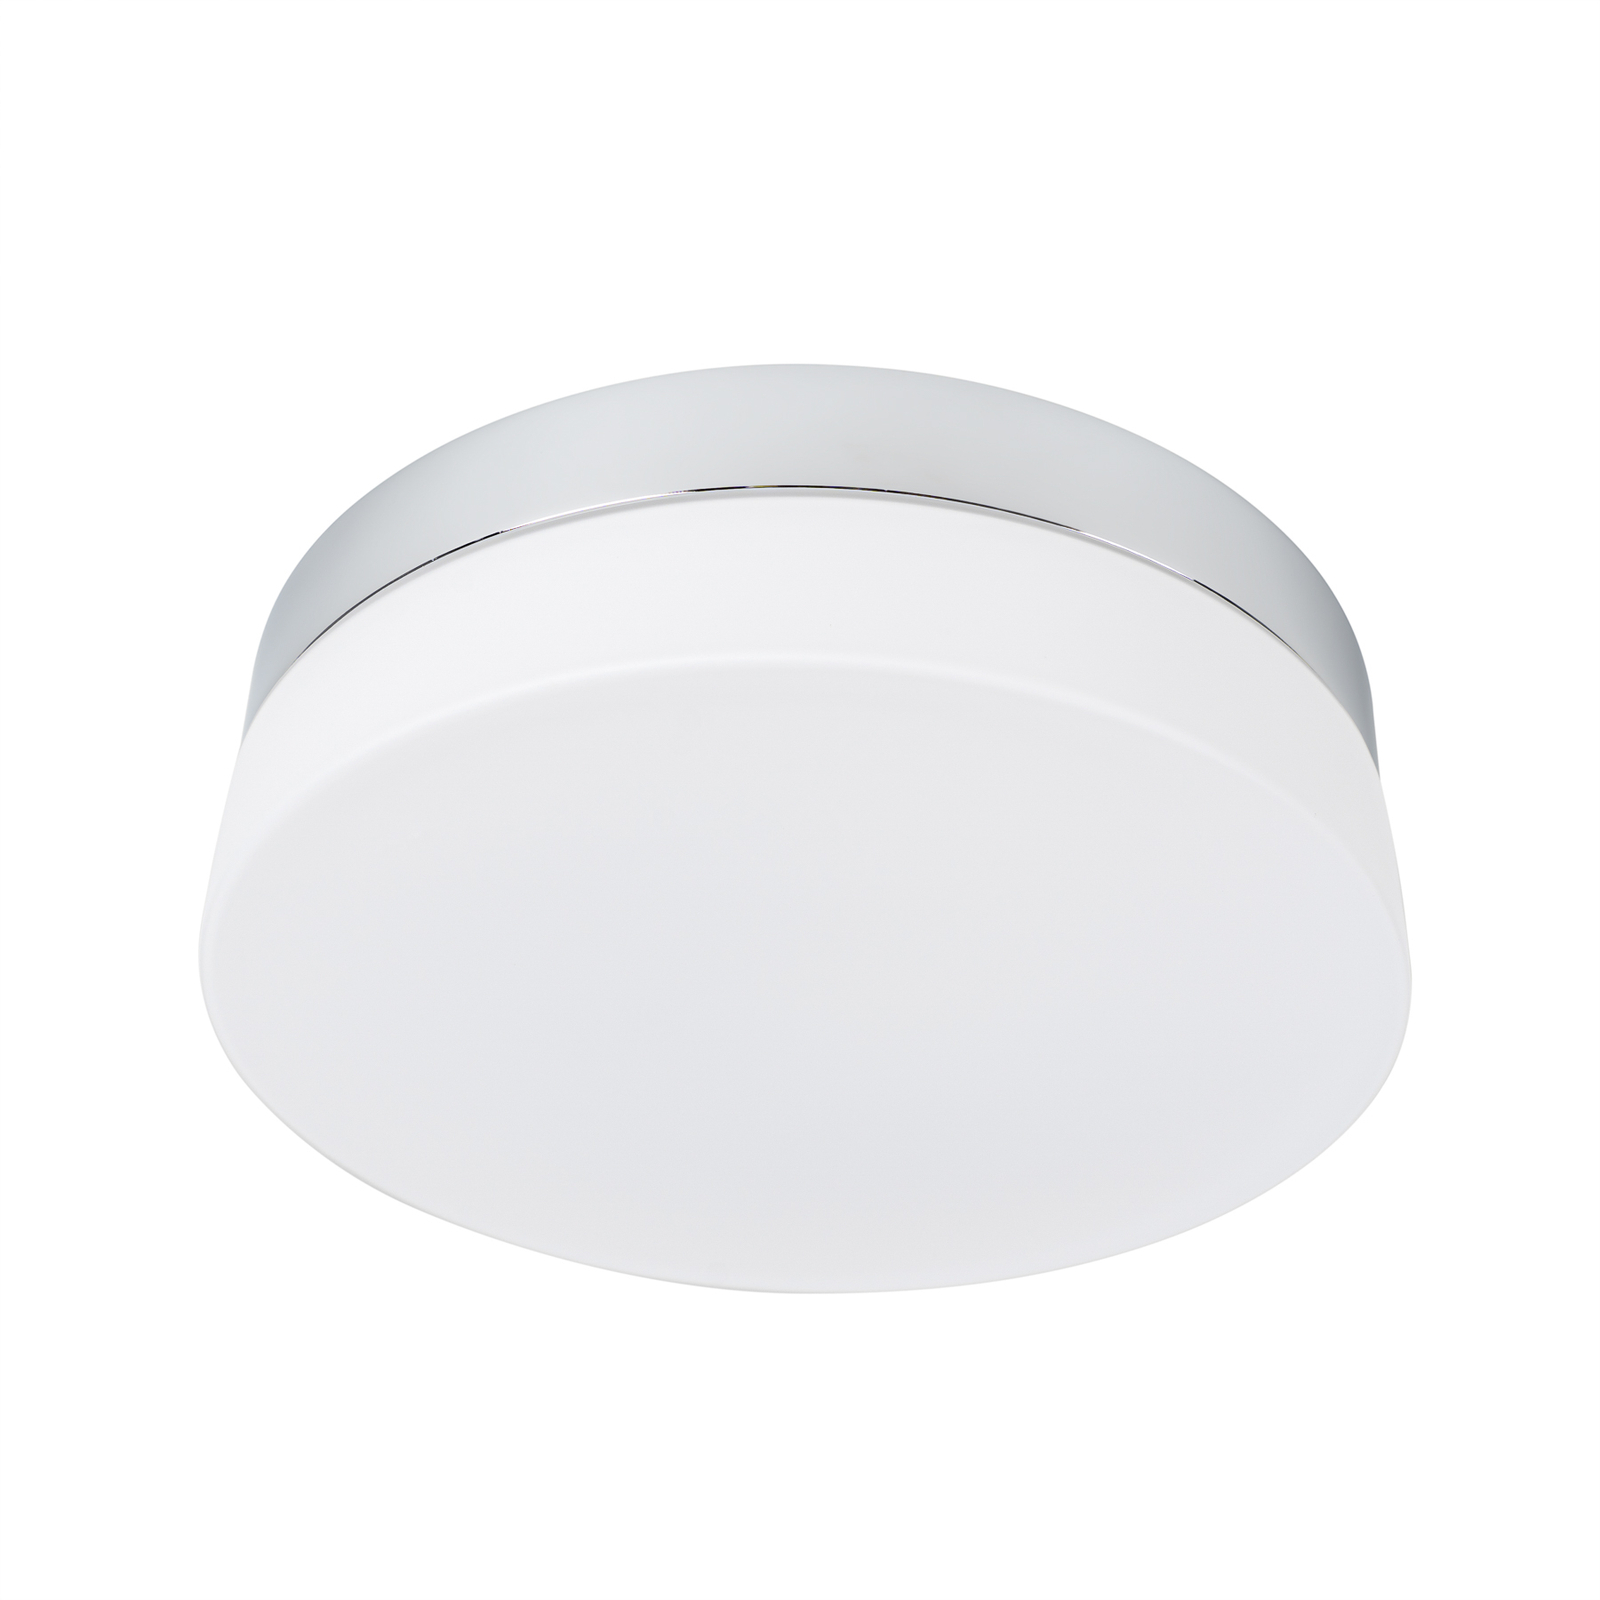 Arcchio Aliras LED bathroom ceiling lamp, 24 cm